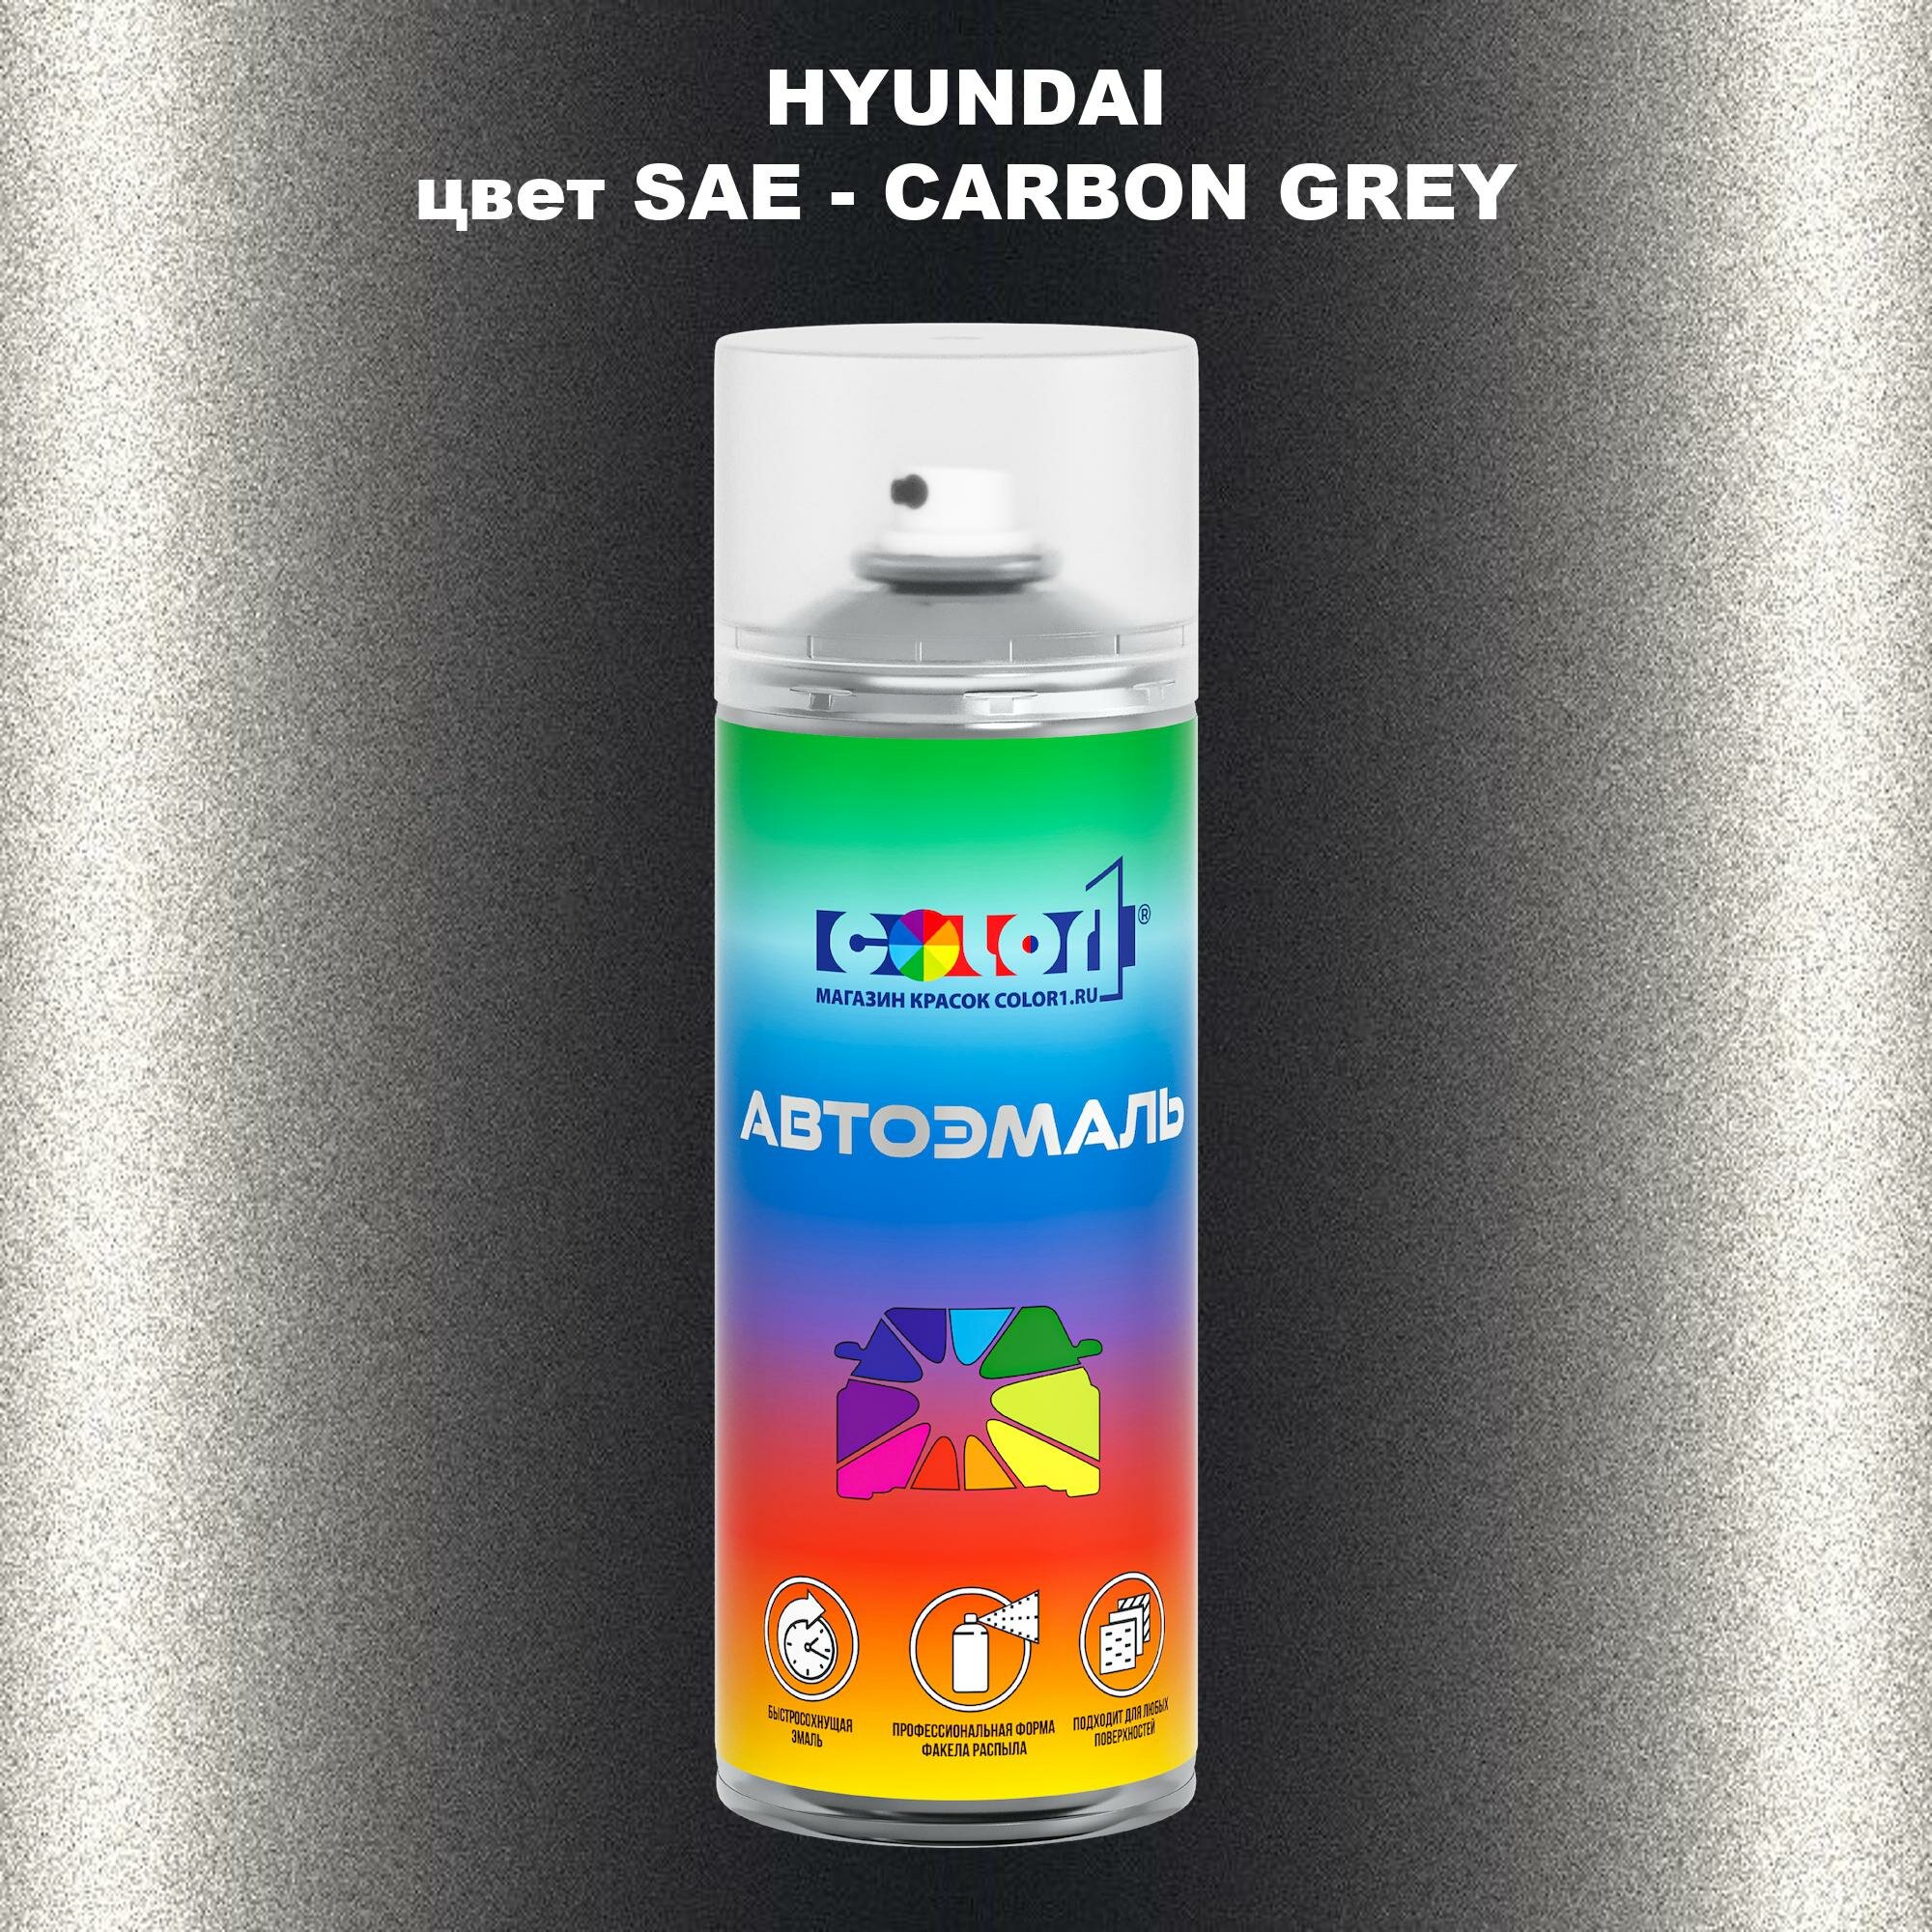 Аэрозольная краска COLOR1 для HYUNDAI, цвет SAE - CARBON GREY